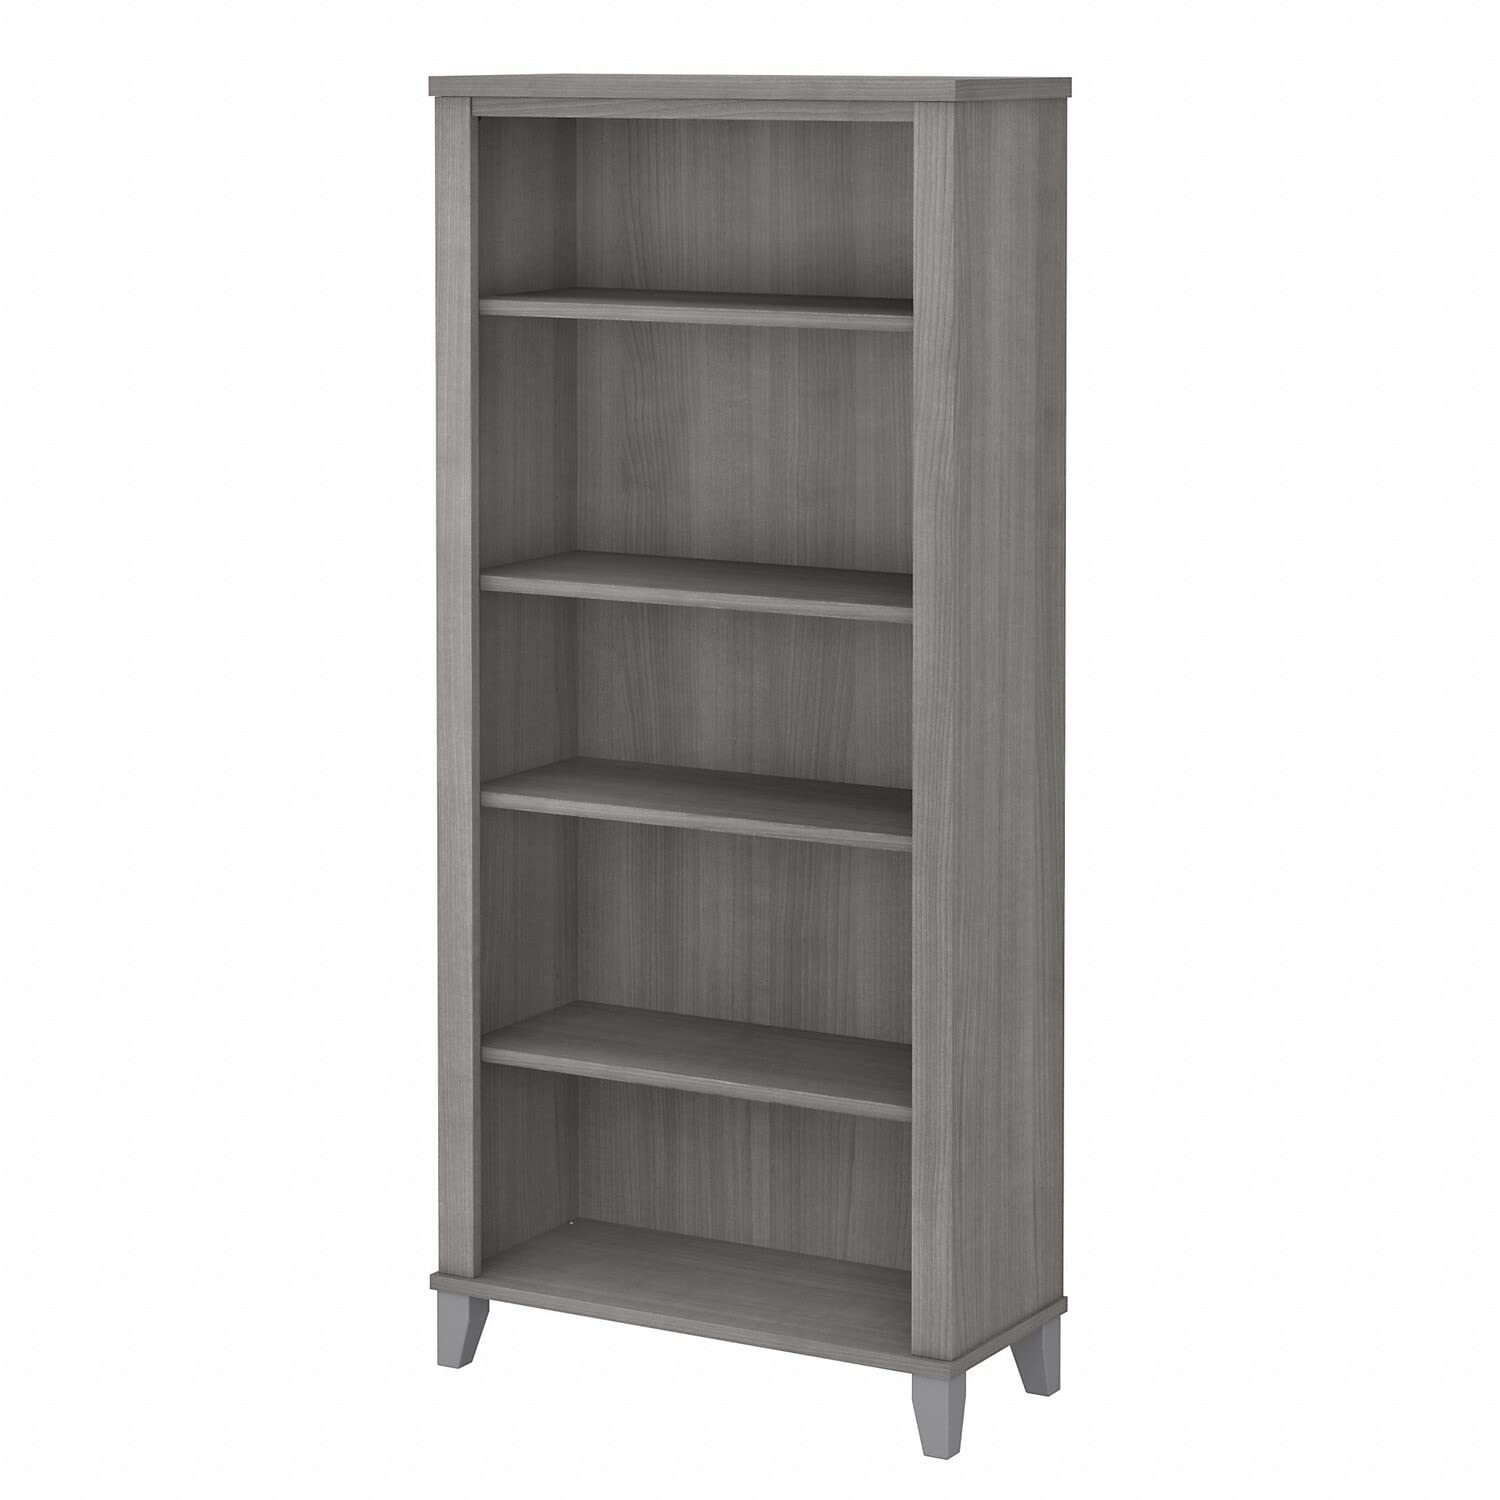 Bush Furniture Книжный шкаф Somerset Tall с 5 полками платиново-серого цвета